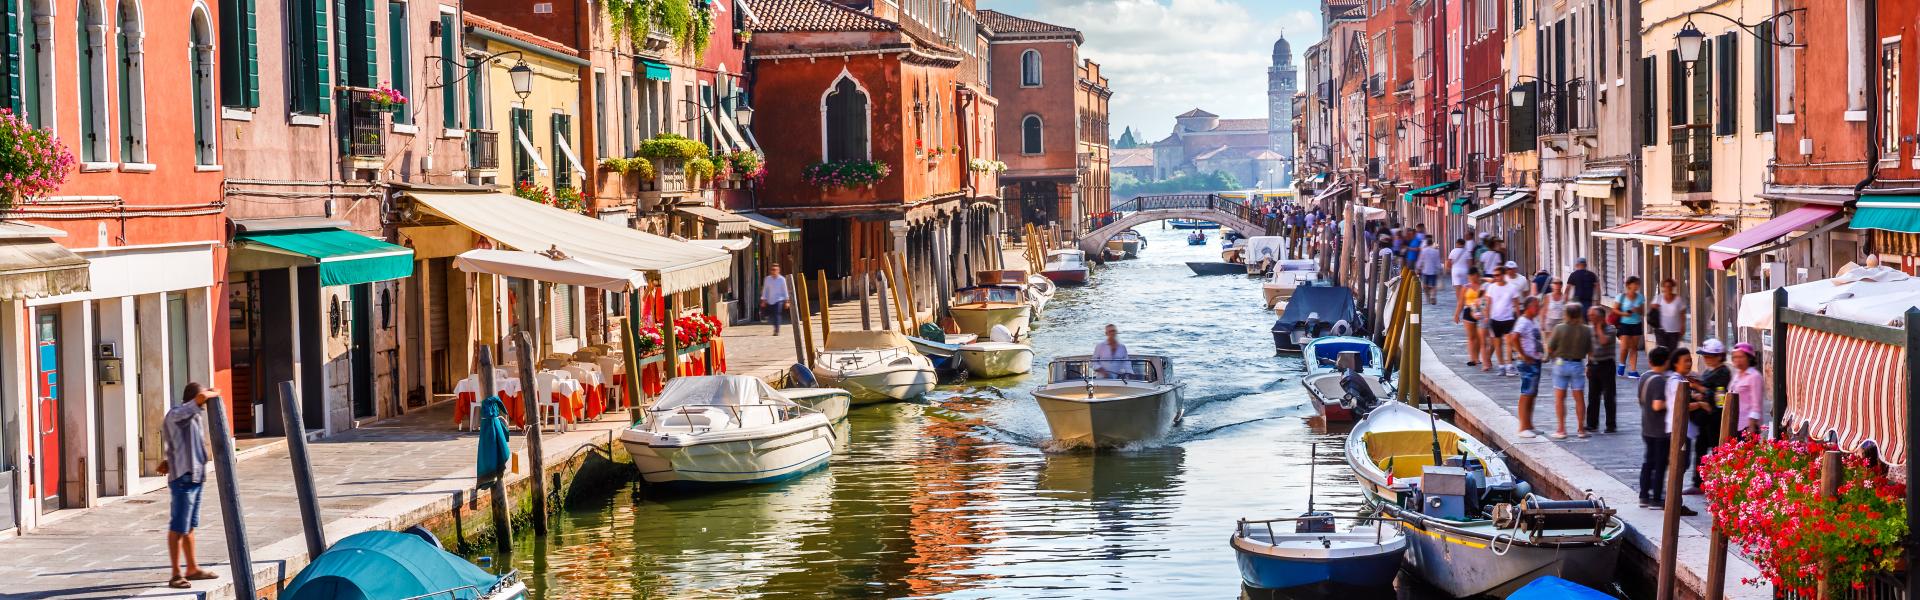 Appartementen in Venetië: romantiek in de Italiaanse stad van de bruggen en kanalen - Casamundo